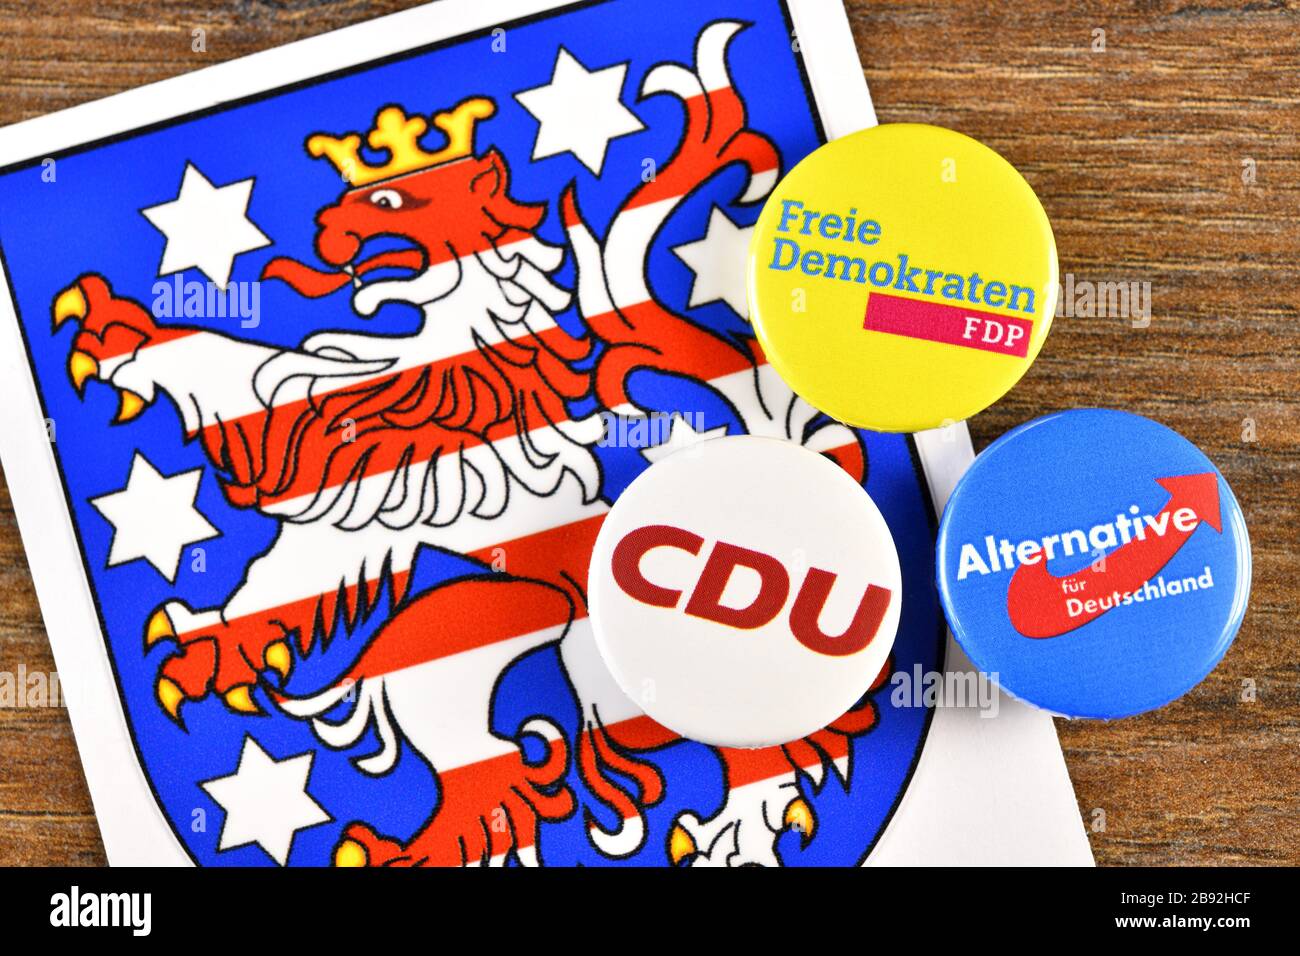 El FDP pone con el apoyo de AFD y CDU al primer ministro en Turingia, foto simbólica, FDP stellt mit Unterstützung von AfD und CDU den Ministerprä Foto de stock